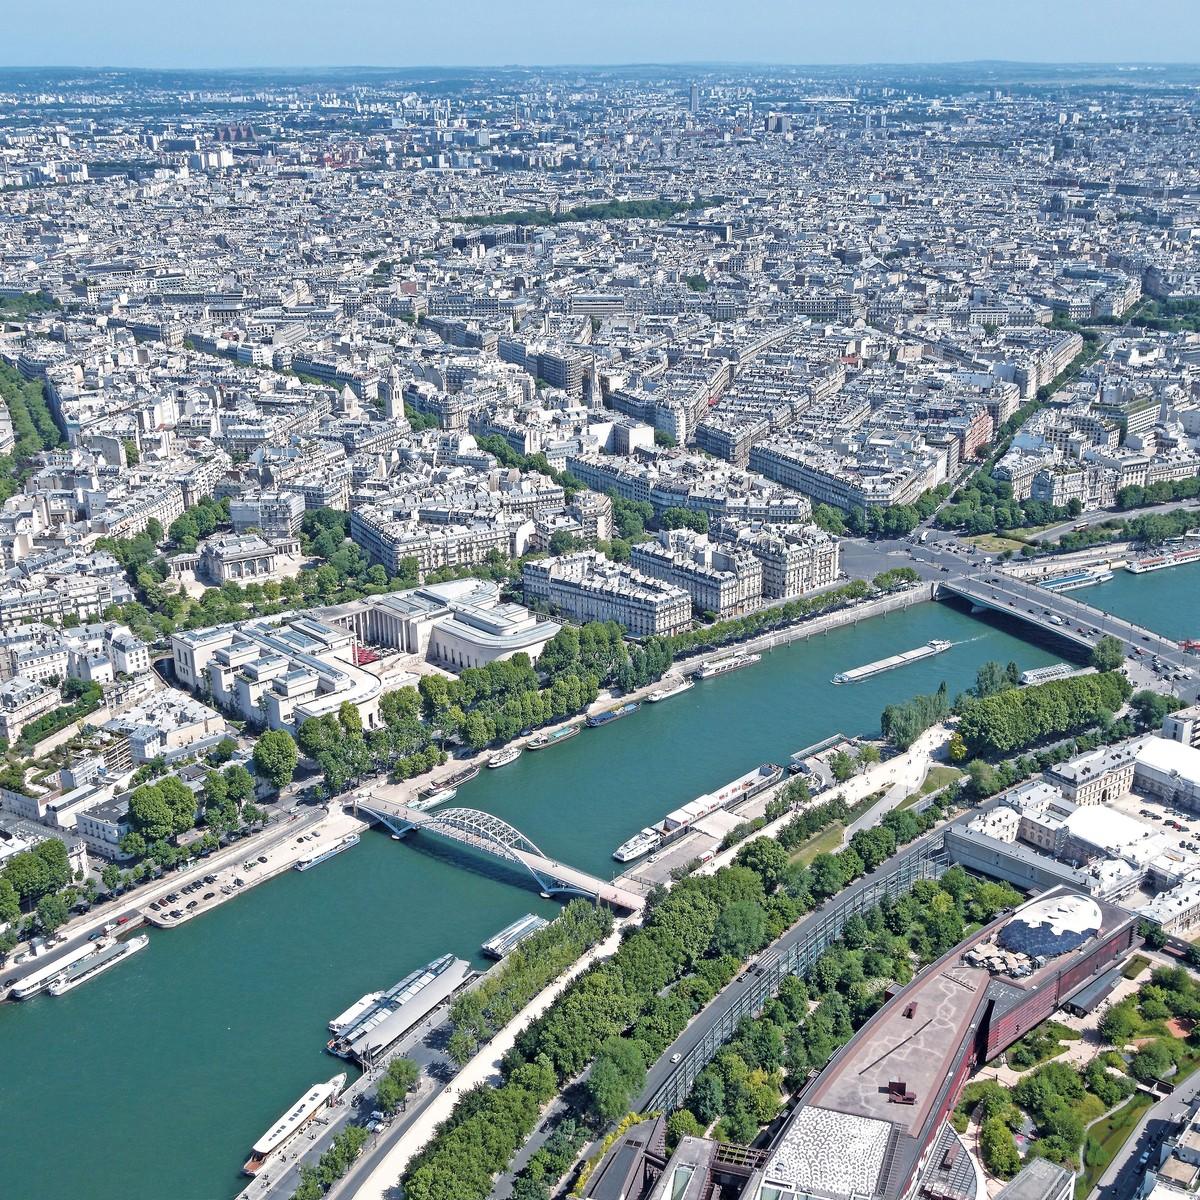  L'urbanisation autour de la Seine.